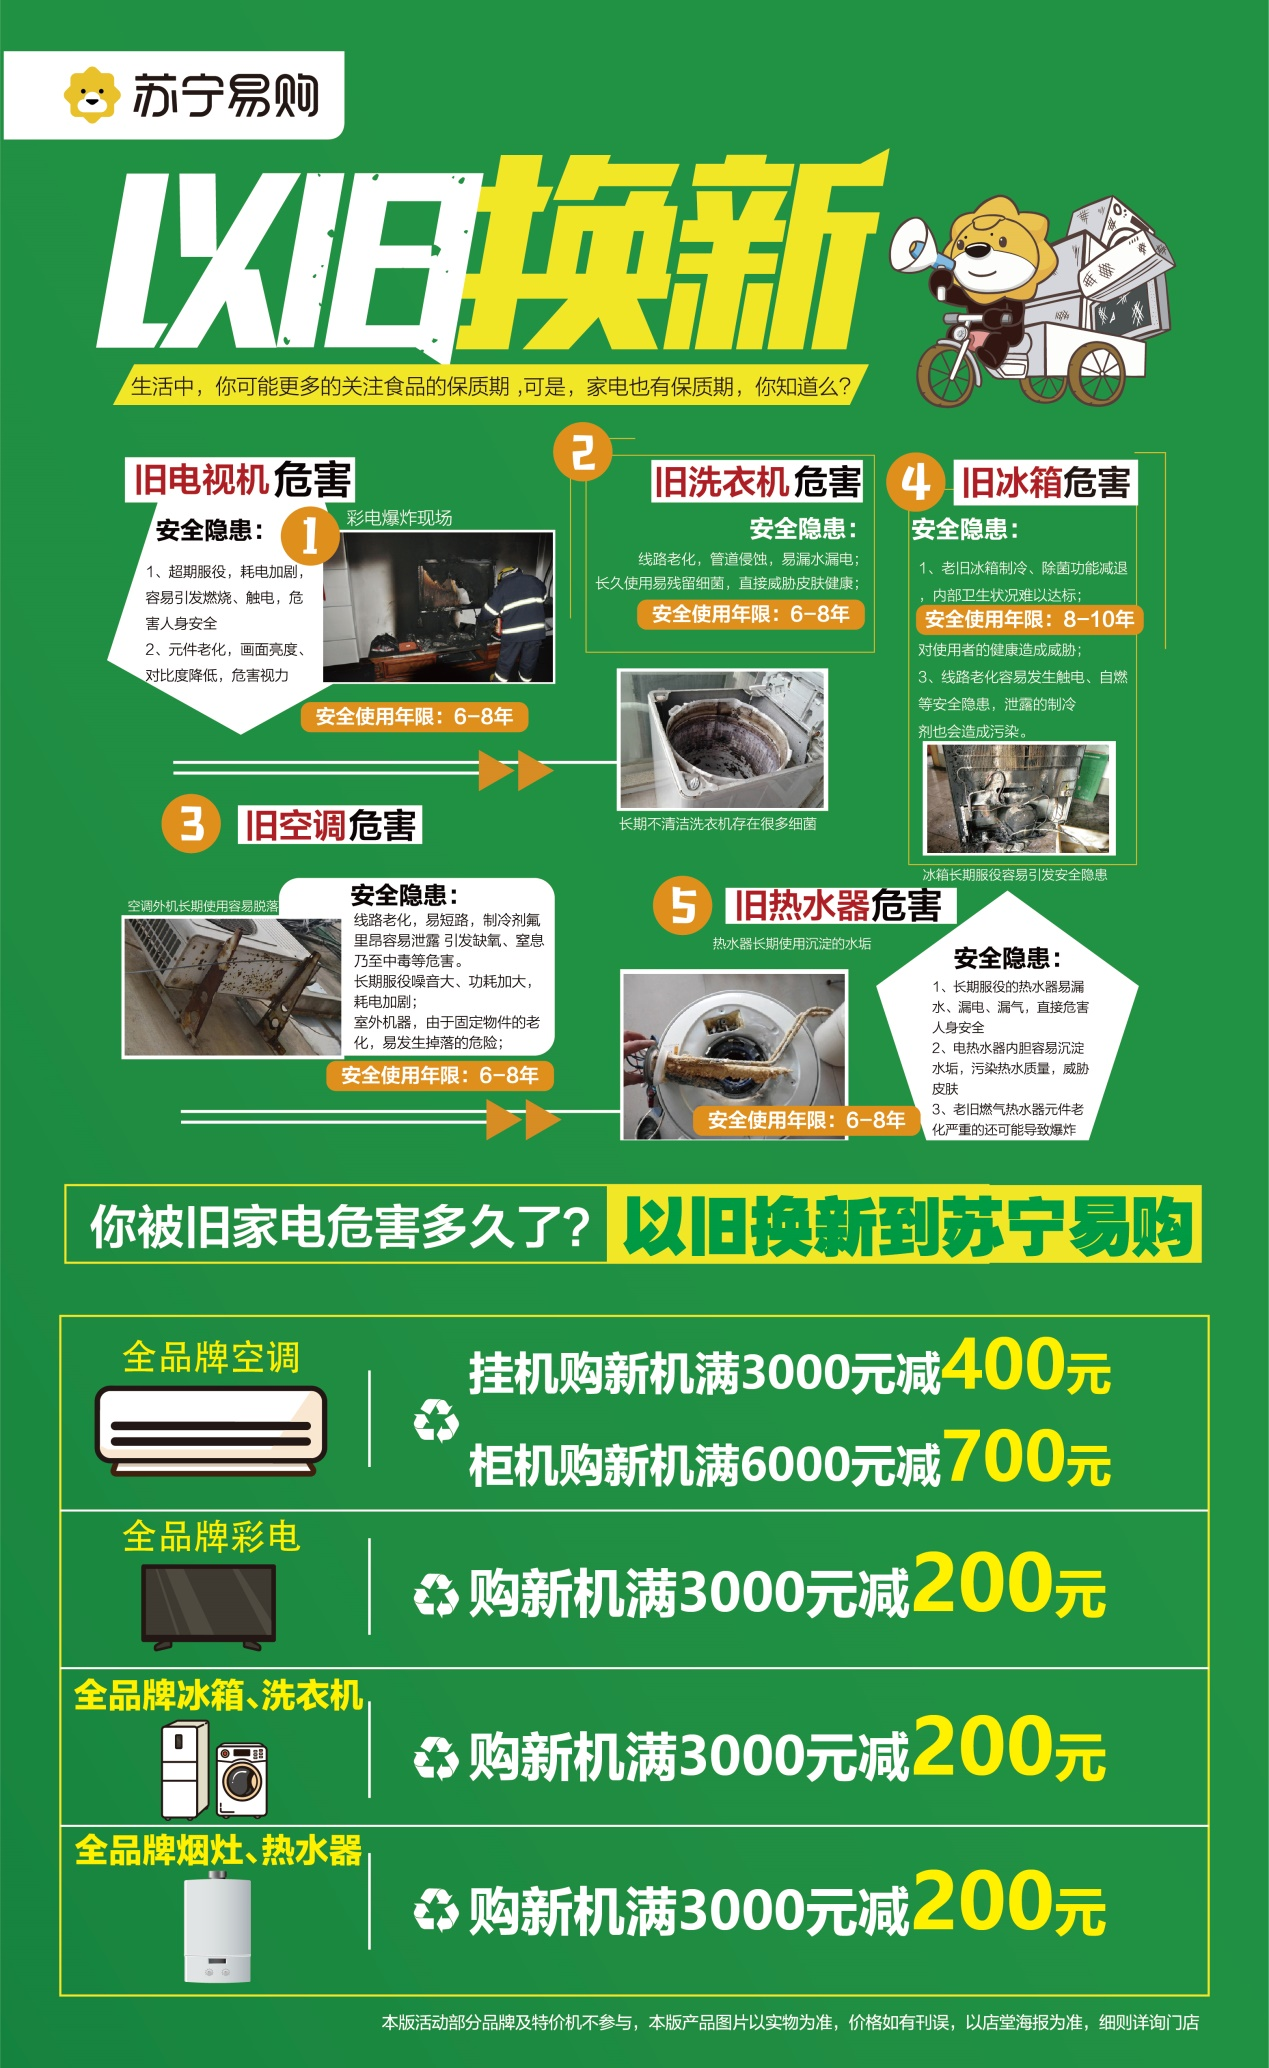 年终焕新在即，芜湖苏宁易购“家电以旧换新”积极响应我市消费促进月